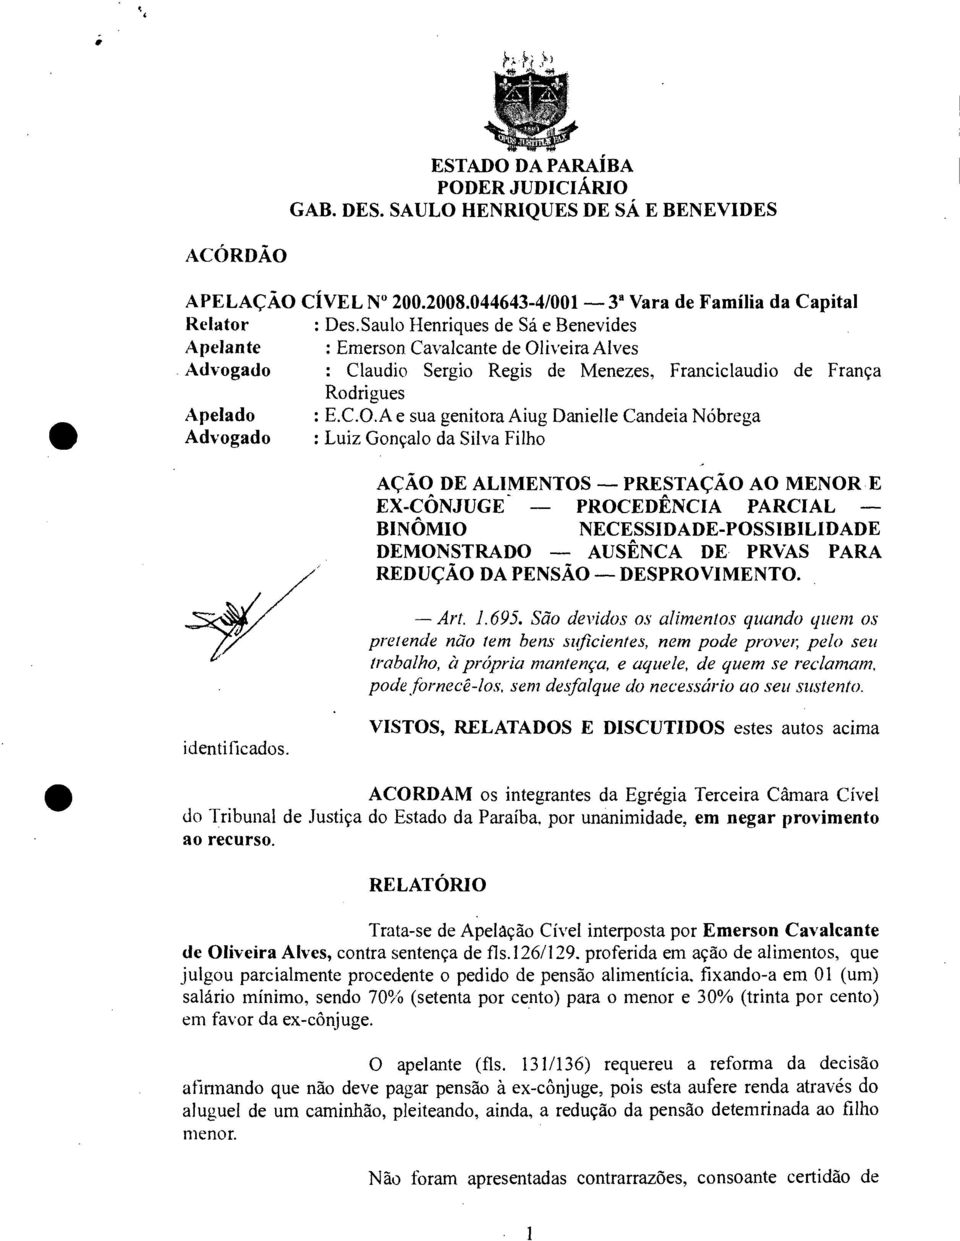 iveira Alves Advogado : Claudio Sergio Regis de Menezes, Franciclaudio de França Rodrigues Apelado : E.C.O.